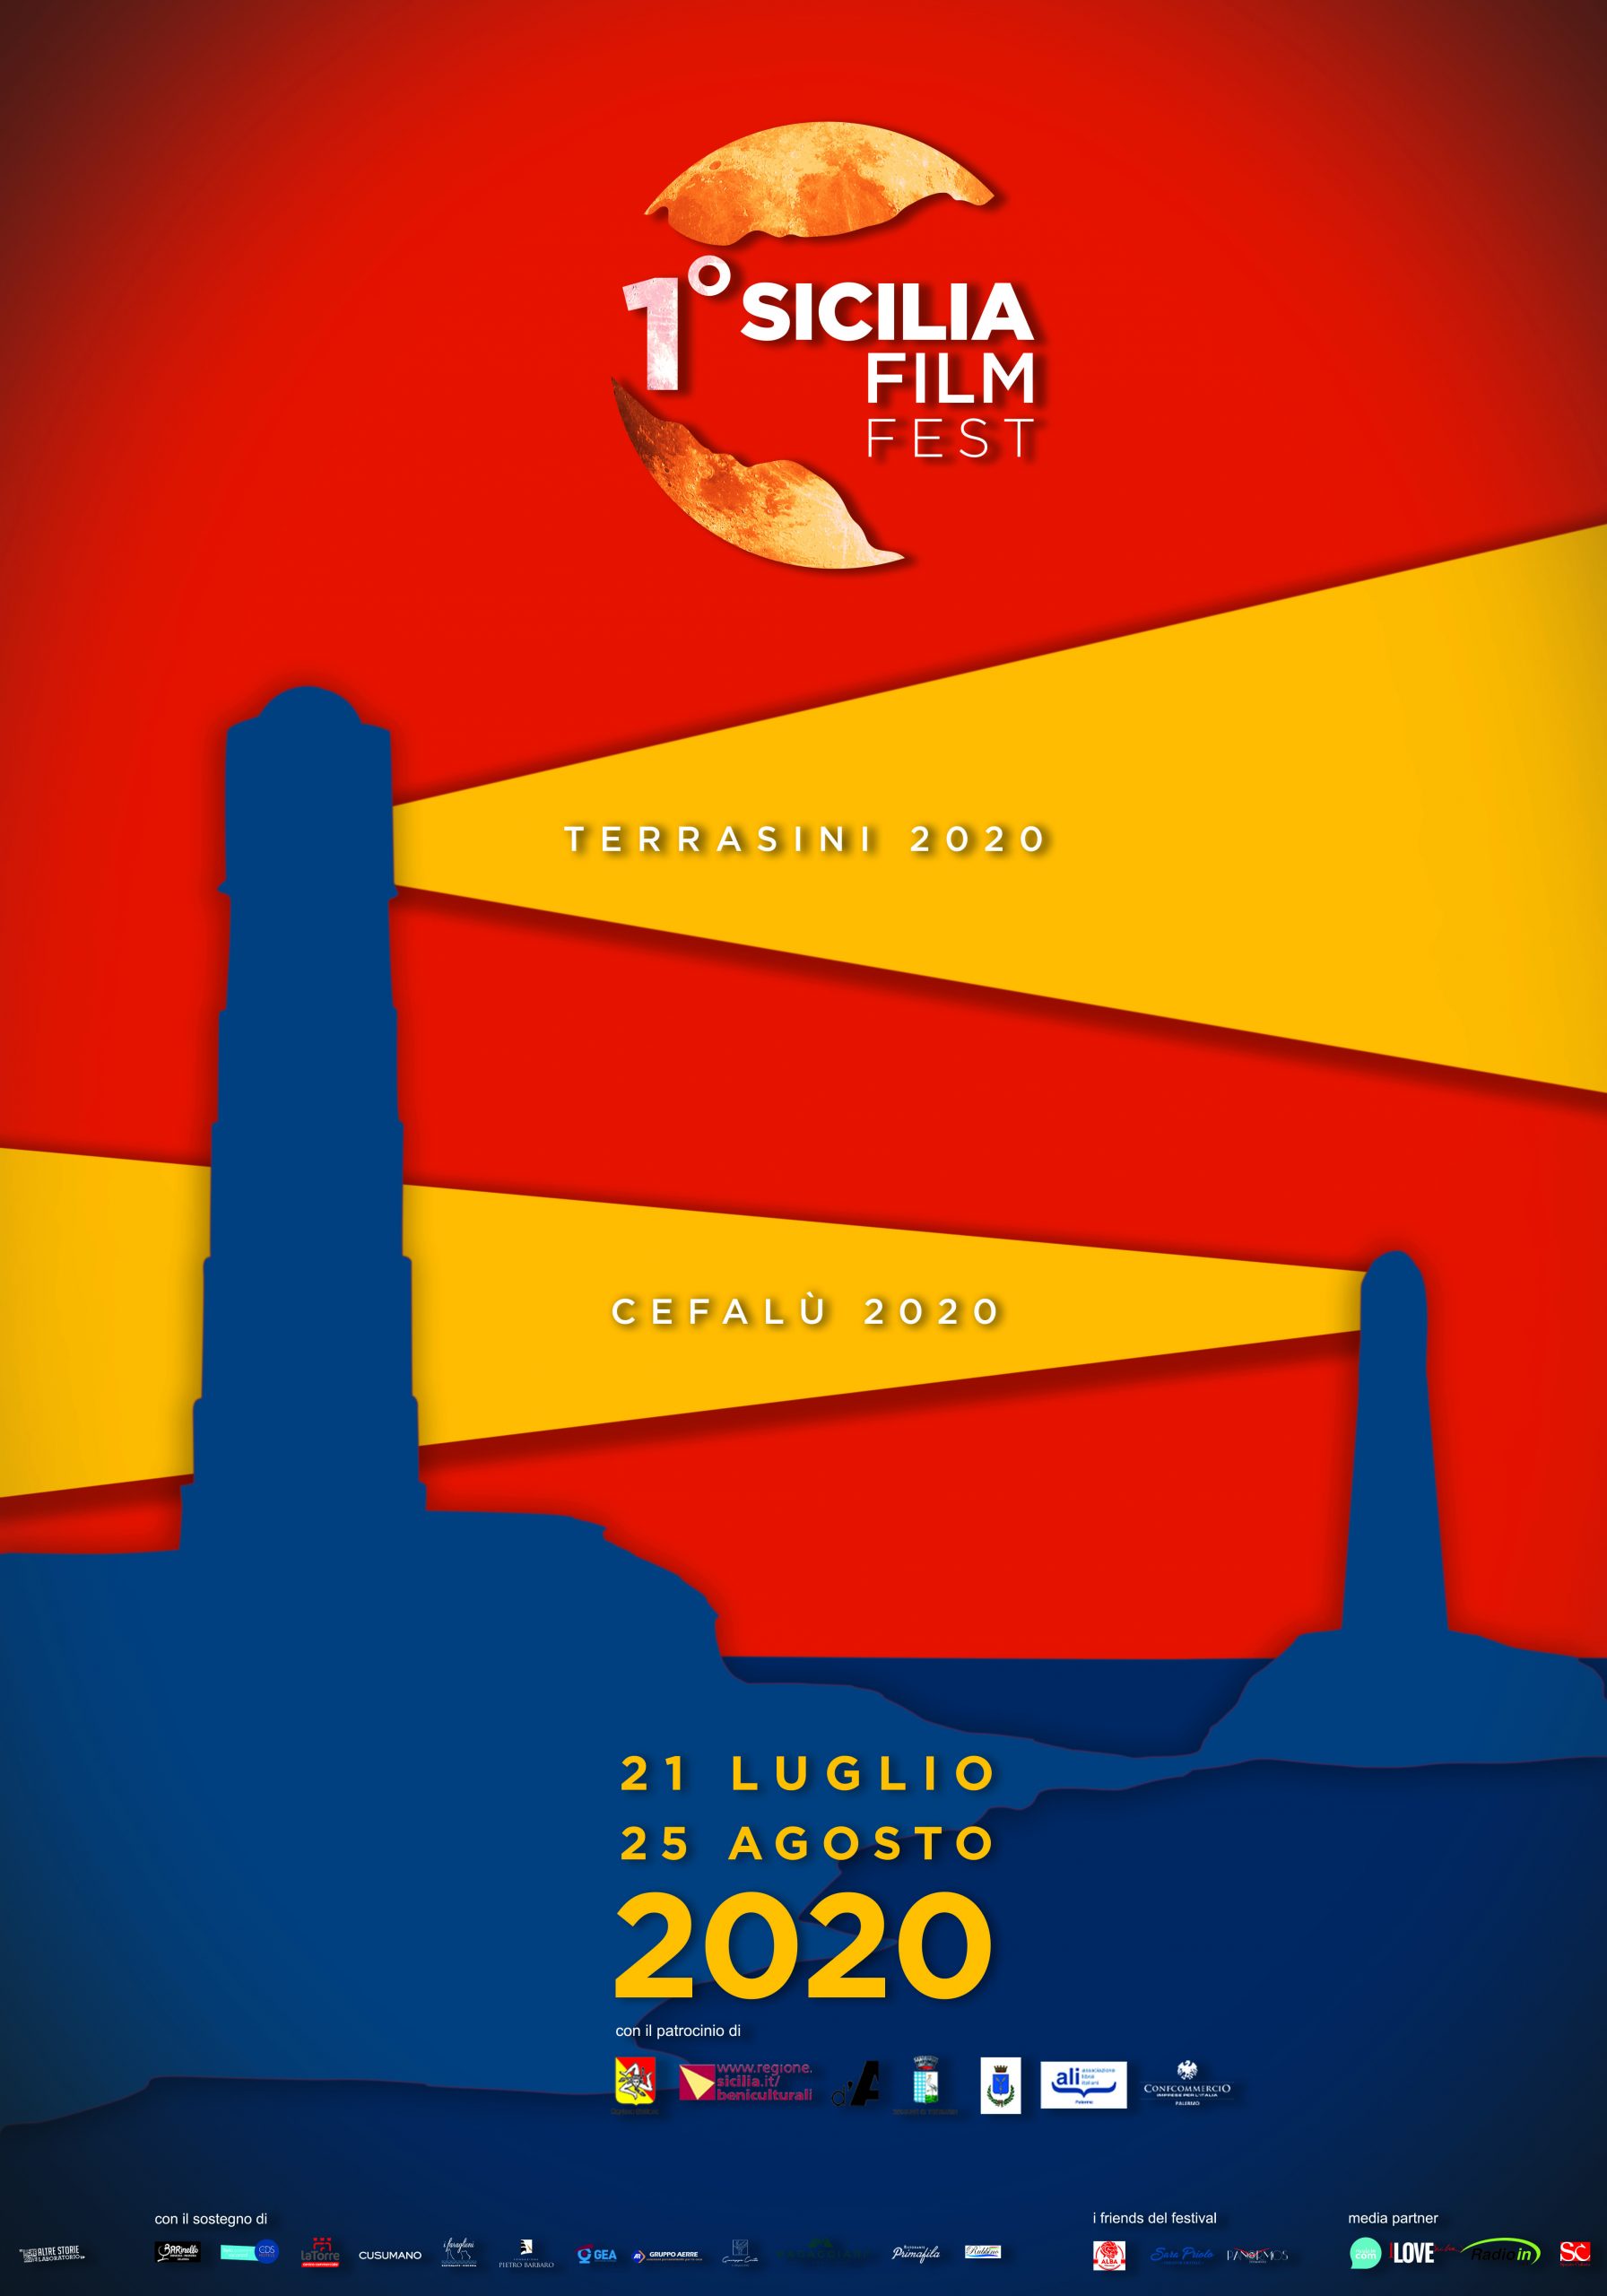 Sicilia Film Fest